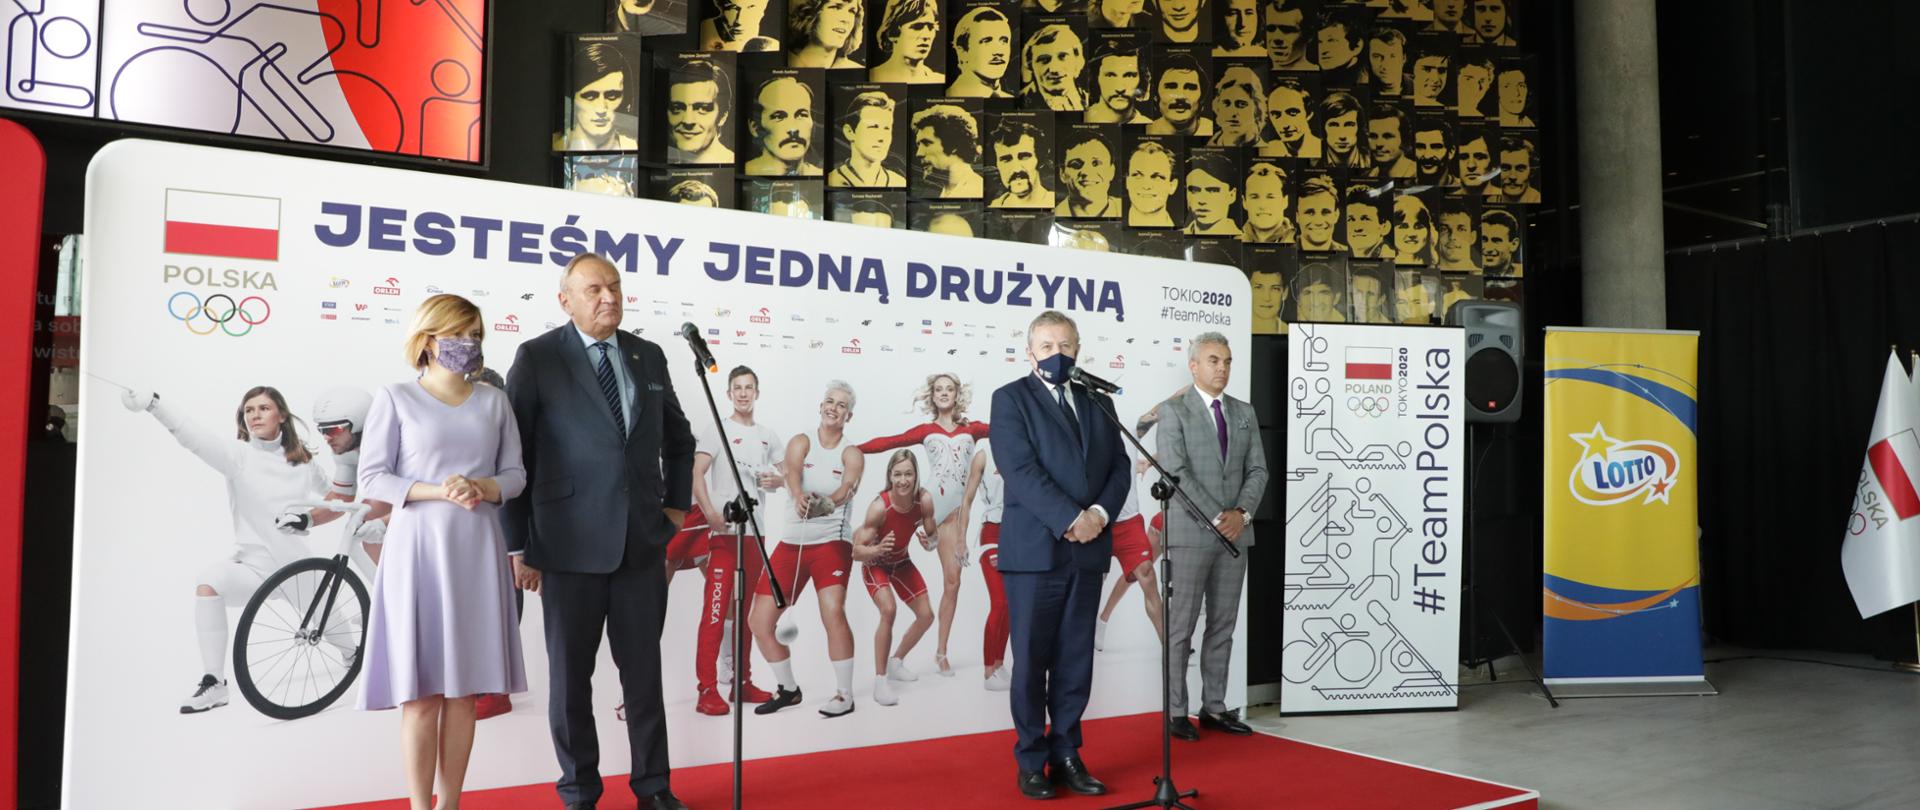 Poznaliśmy skład olimpijskiej reprezentacji Polski na igrzyska w Tokio, fot. Jan Jechna